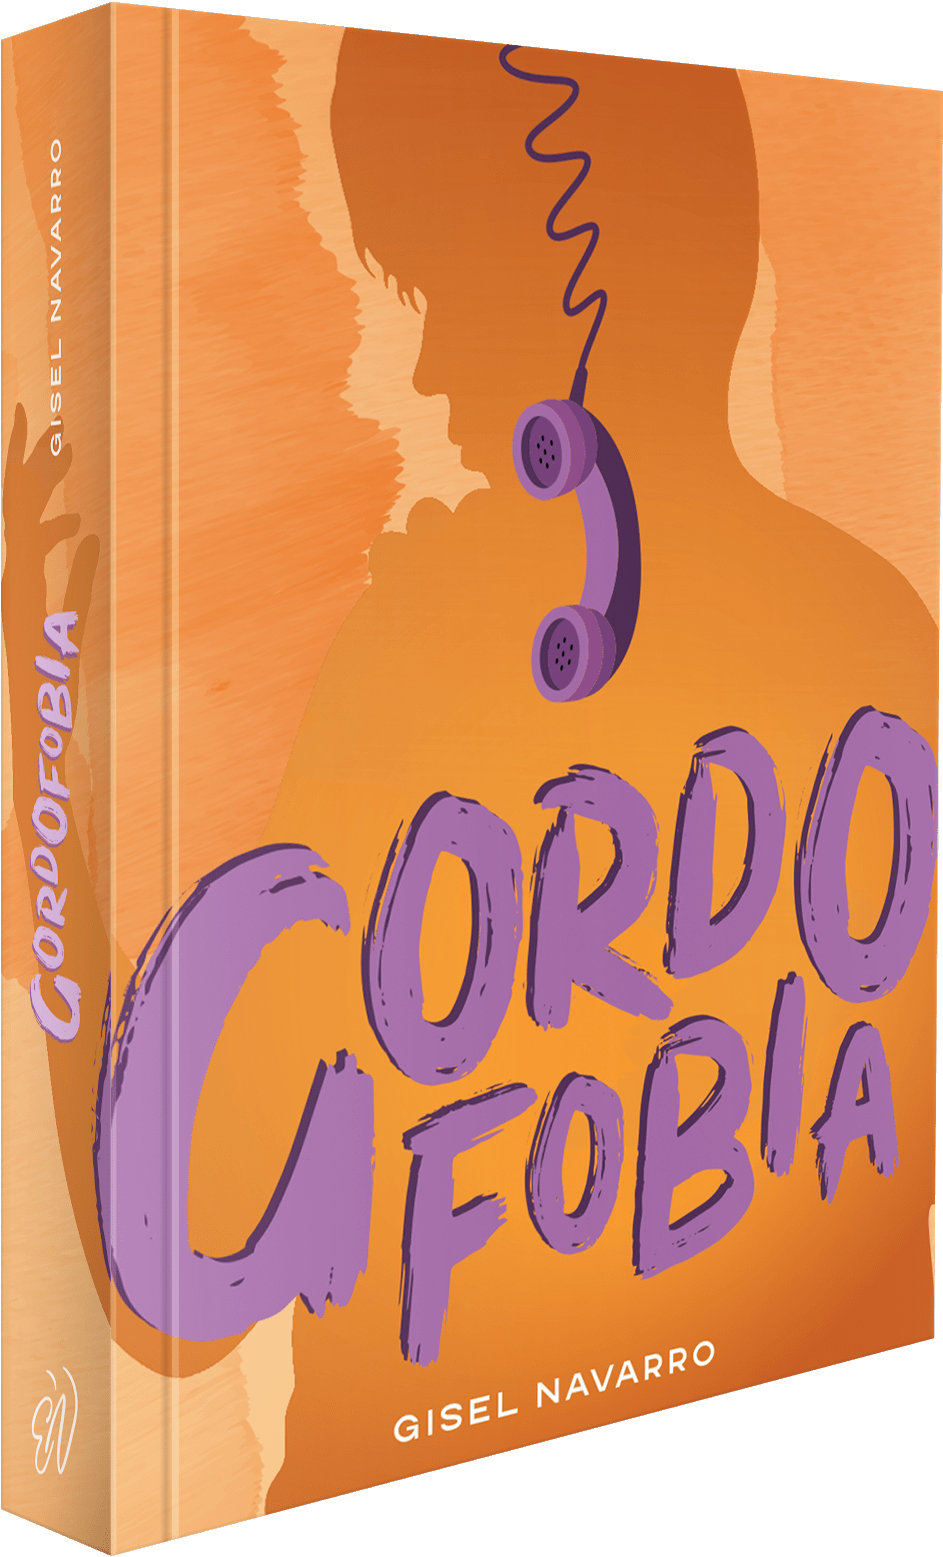 Gordofobia+portada+Gisel+Navarro+Editorial+Naranja+nueva+edicion